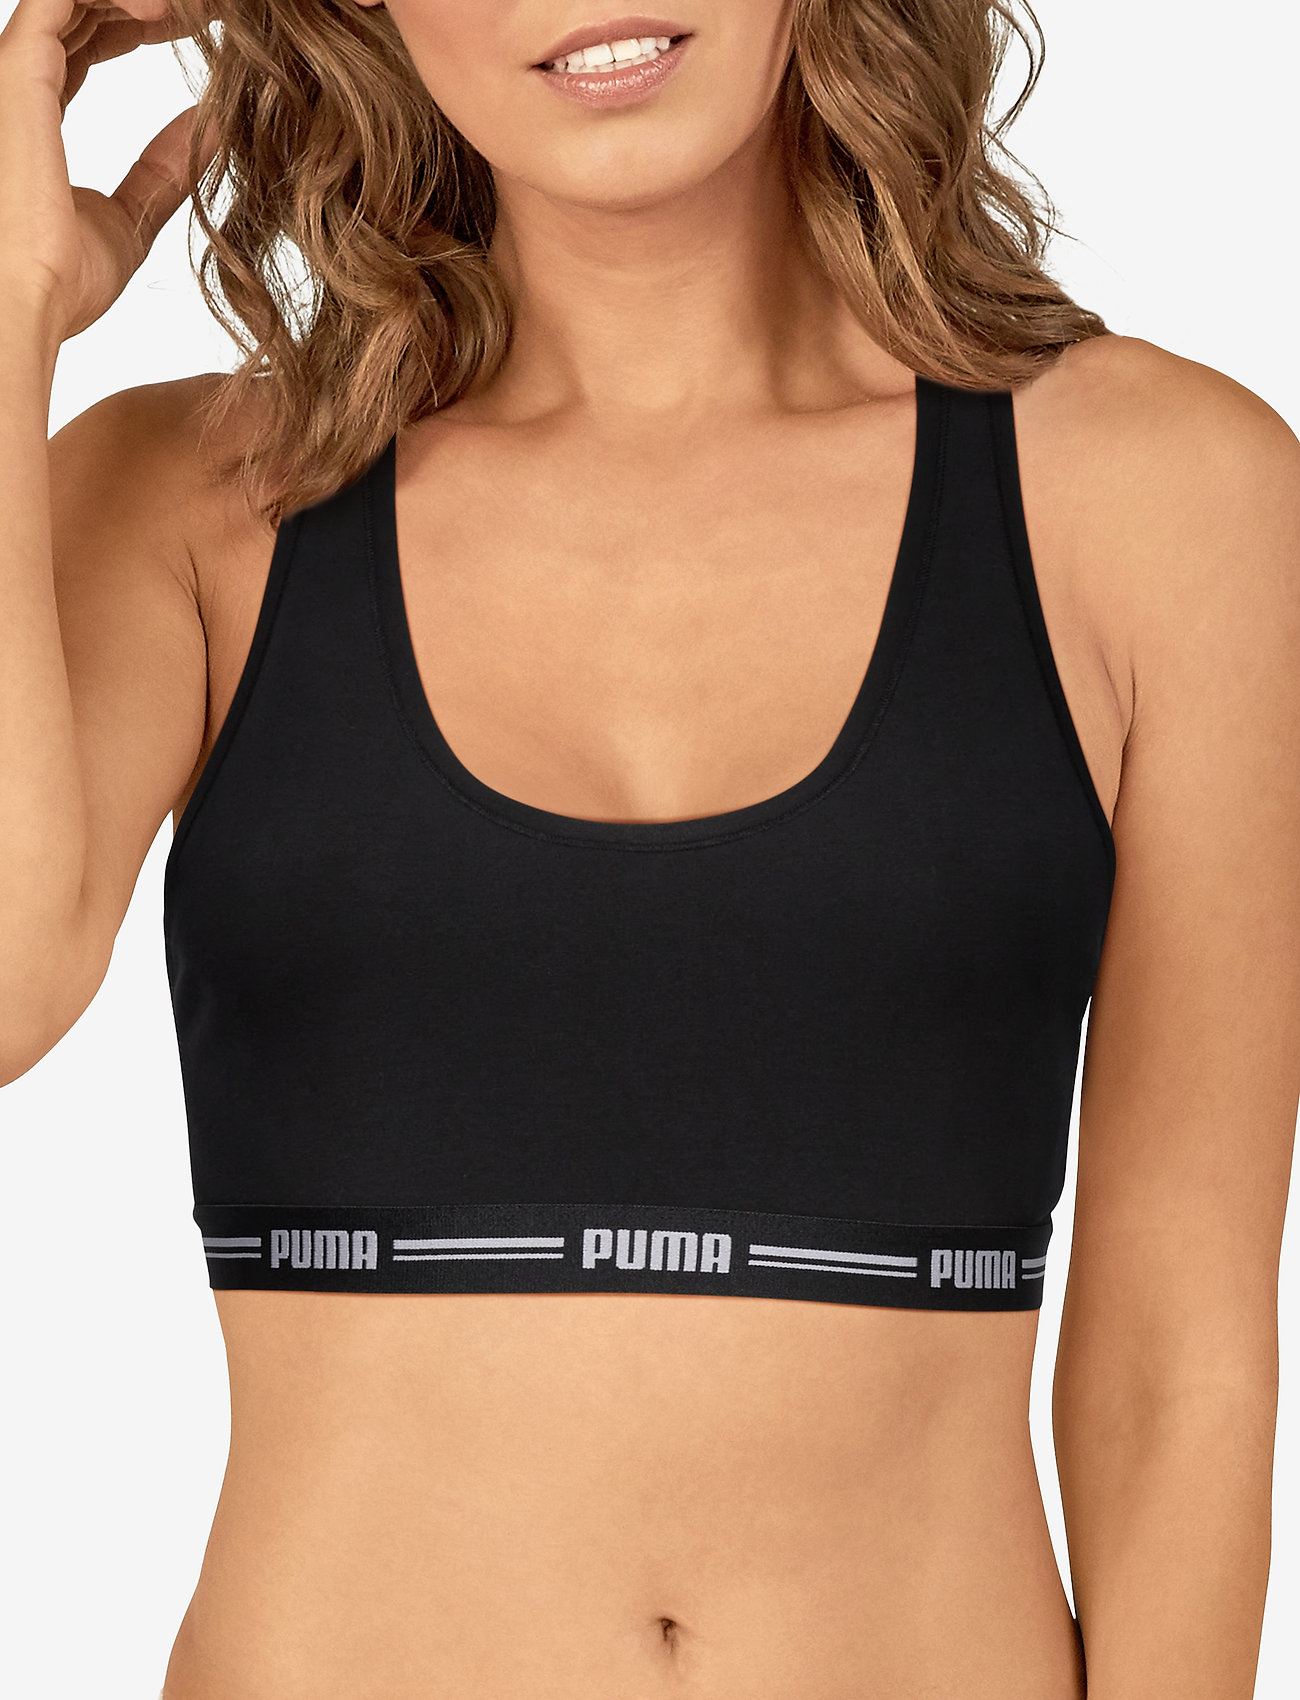 puma bra and underwear